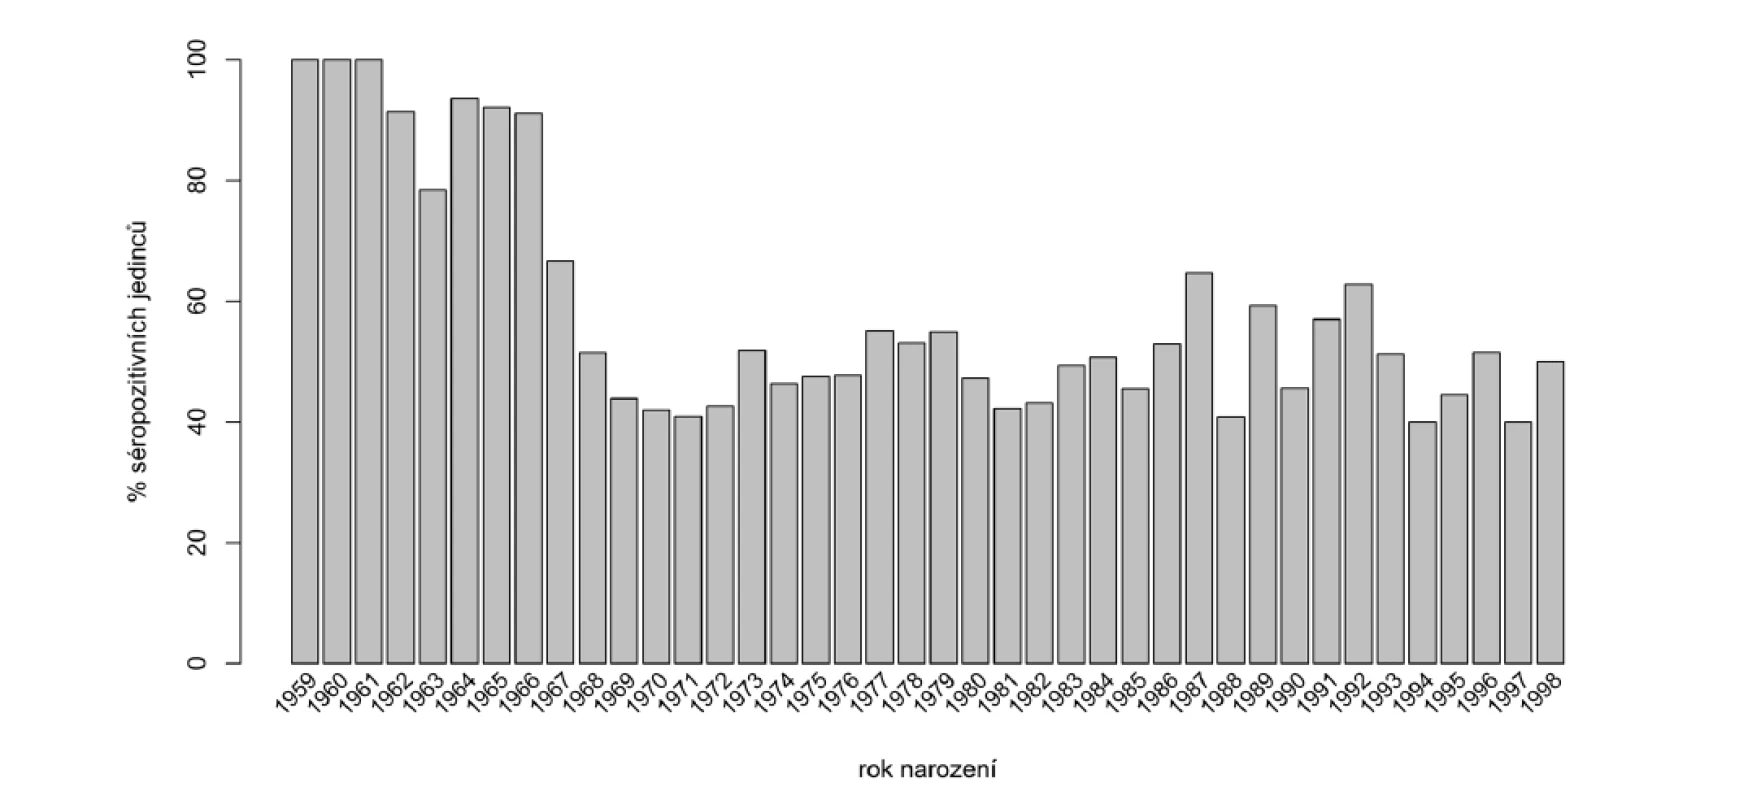 Zastoupení séropozitivních zaměstnanců podle roku narození [10]<br>
Figure 1. Distribution of seroposive employees by year of birth [10]